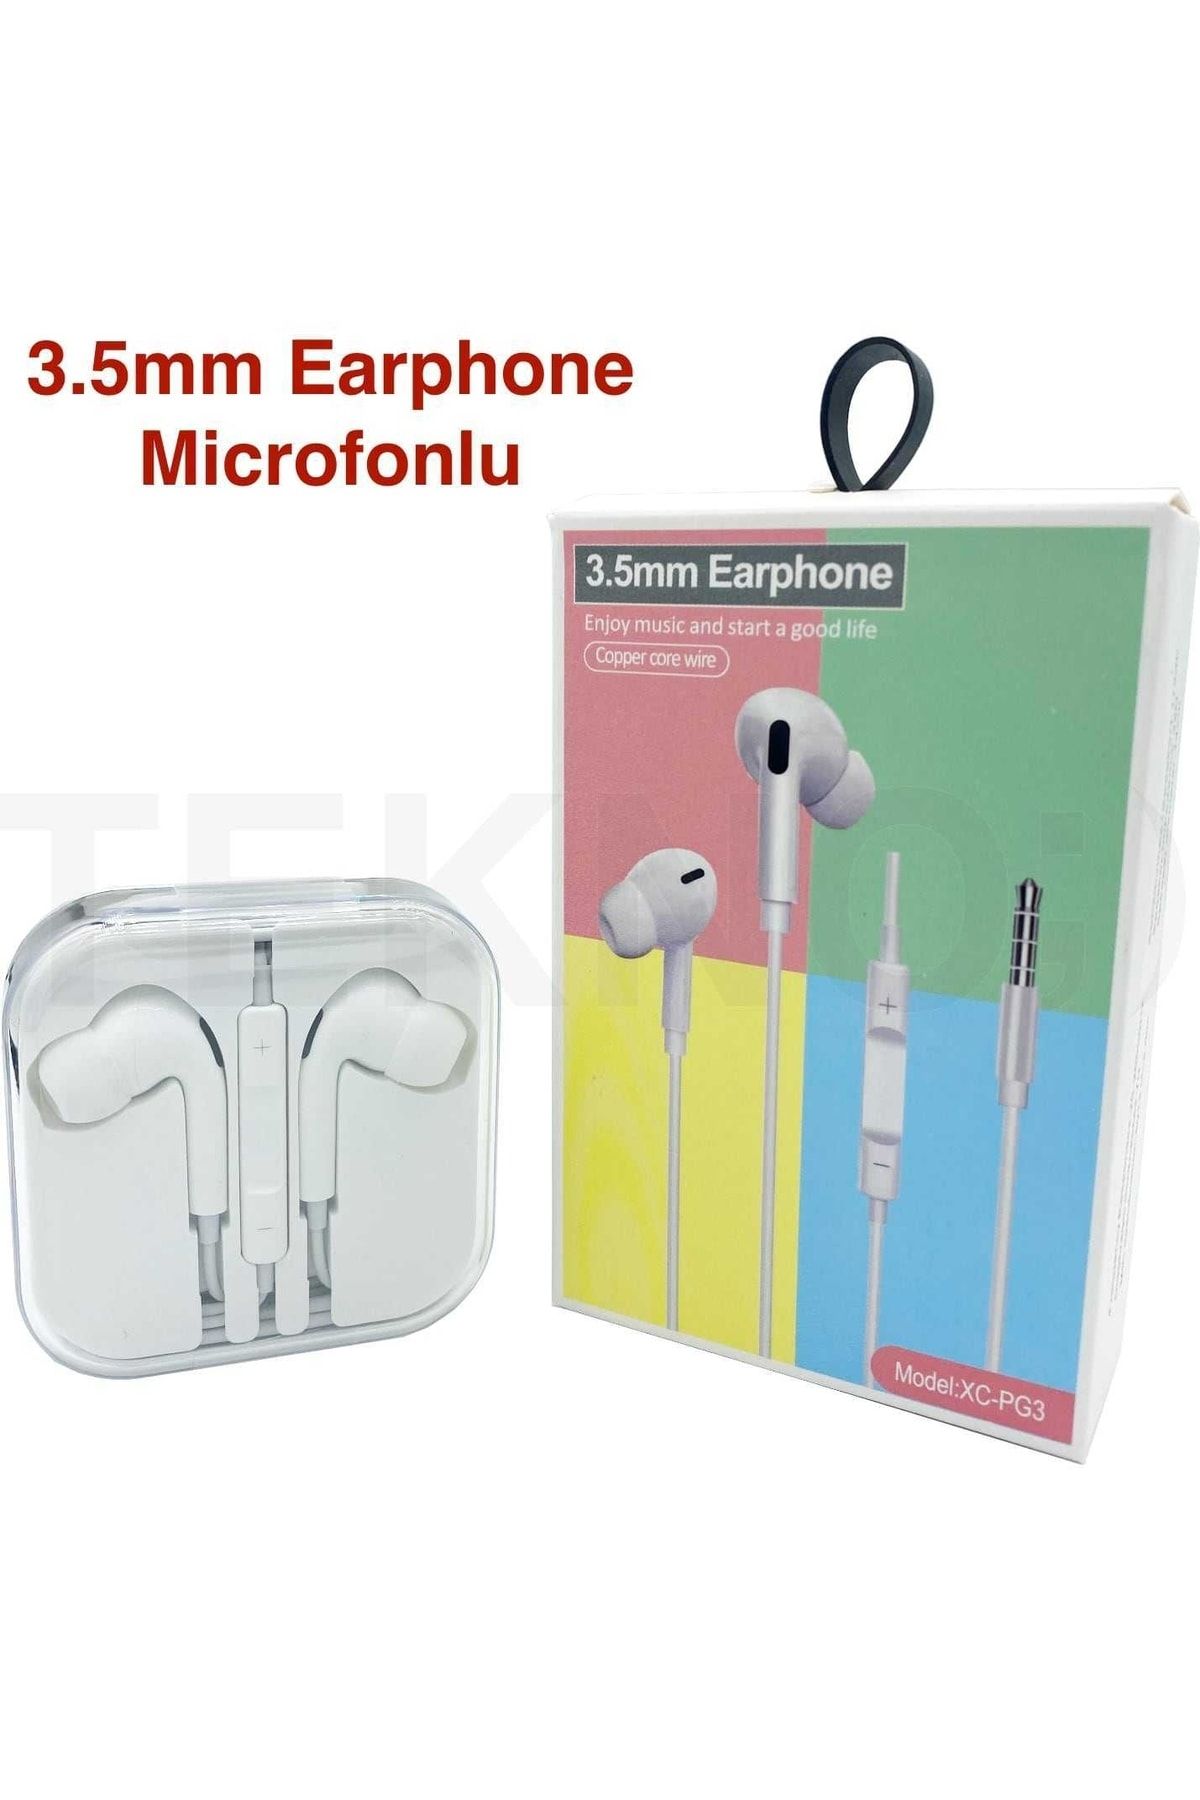 Genel Markalar 3.5mm Earphone Microfonlu Kulaklık Xc-pg3